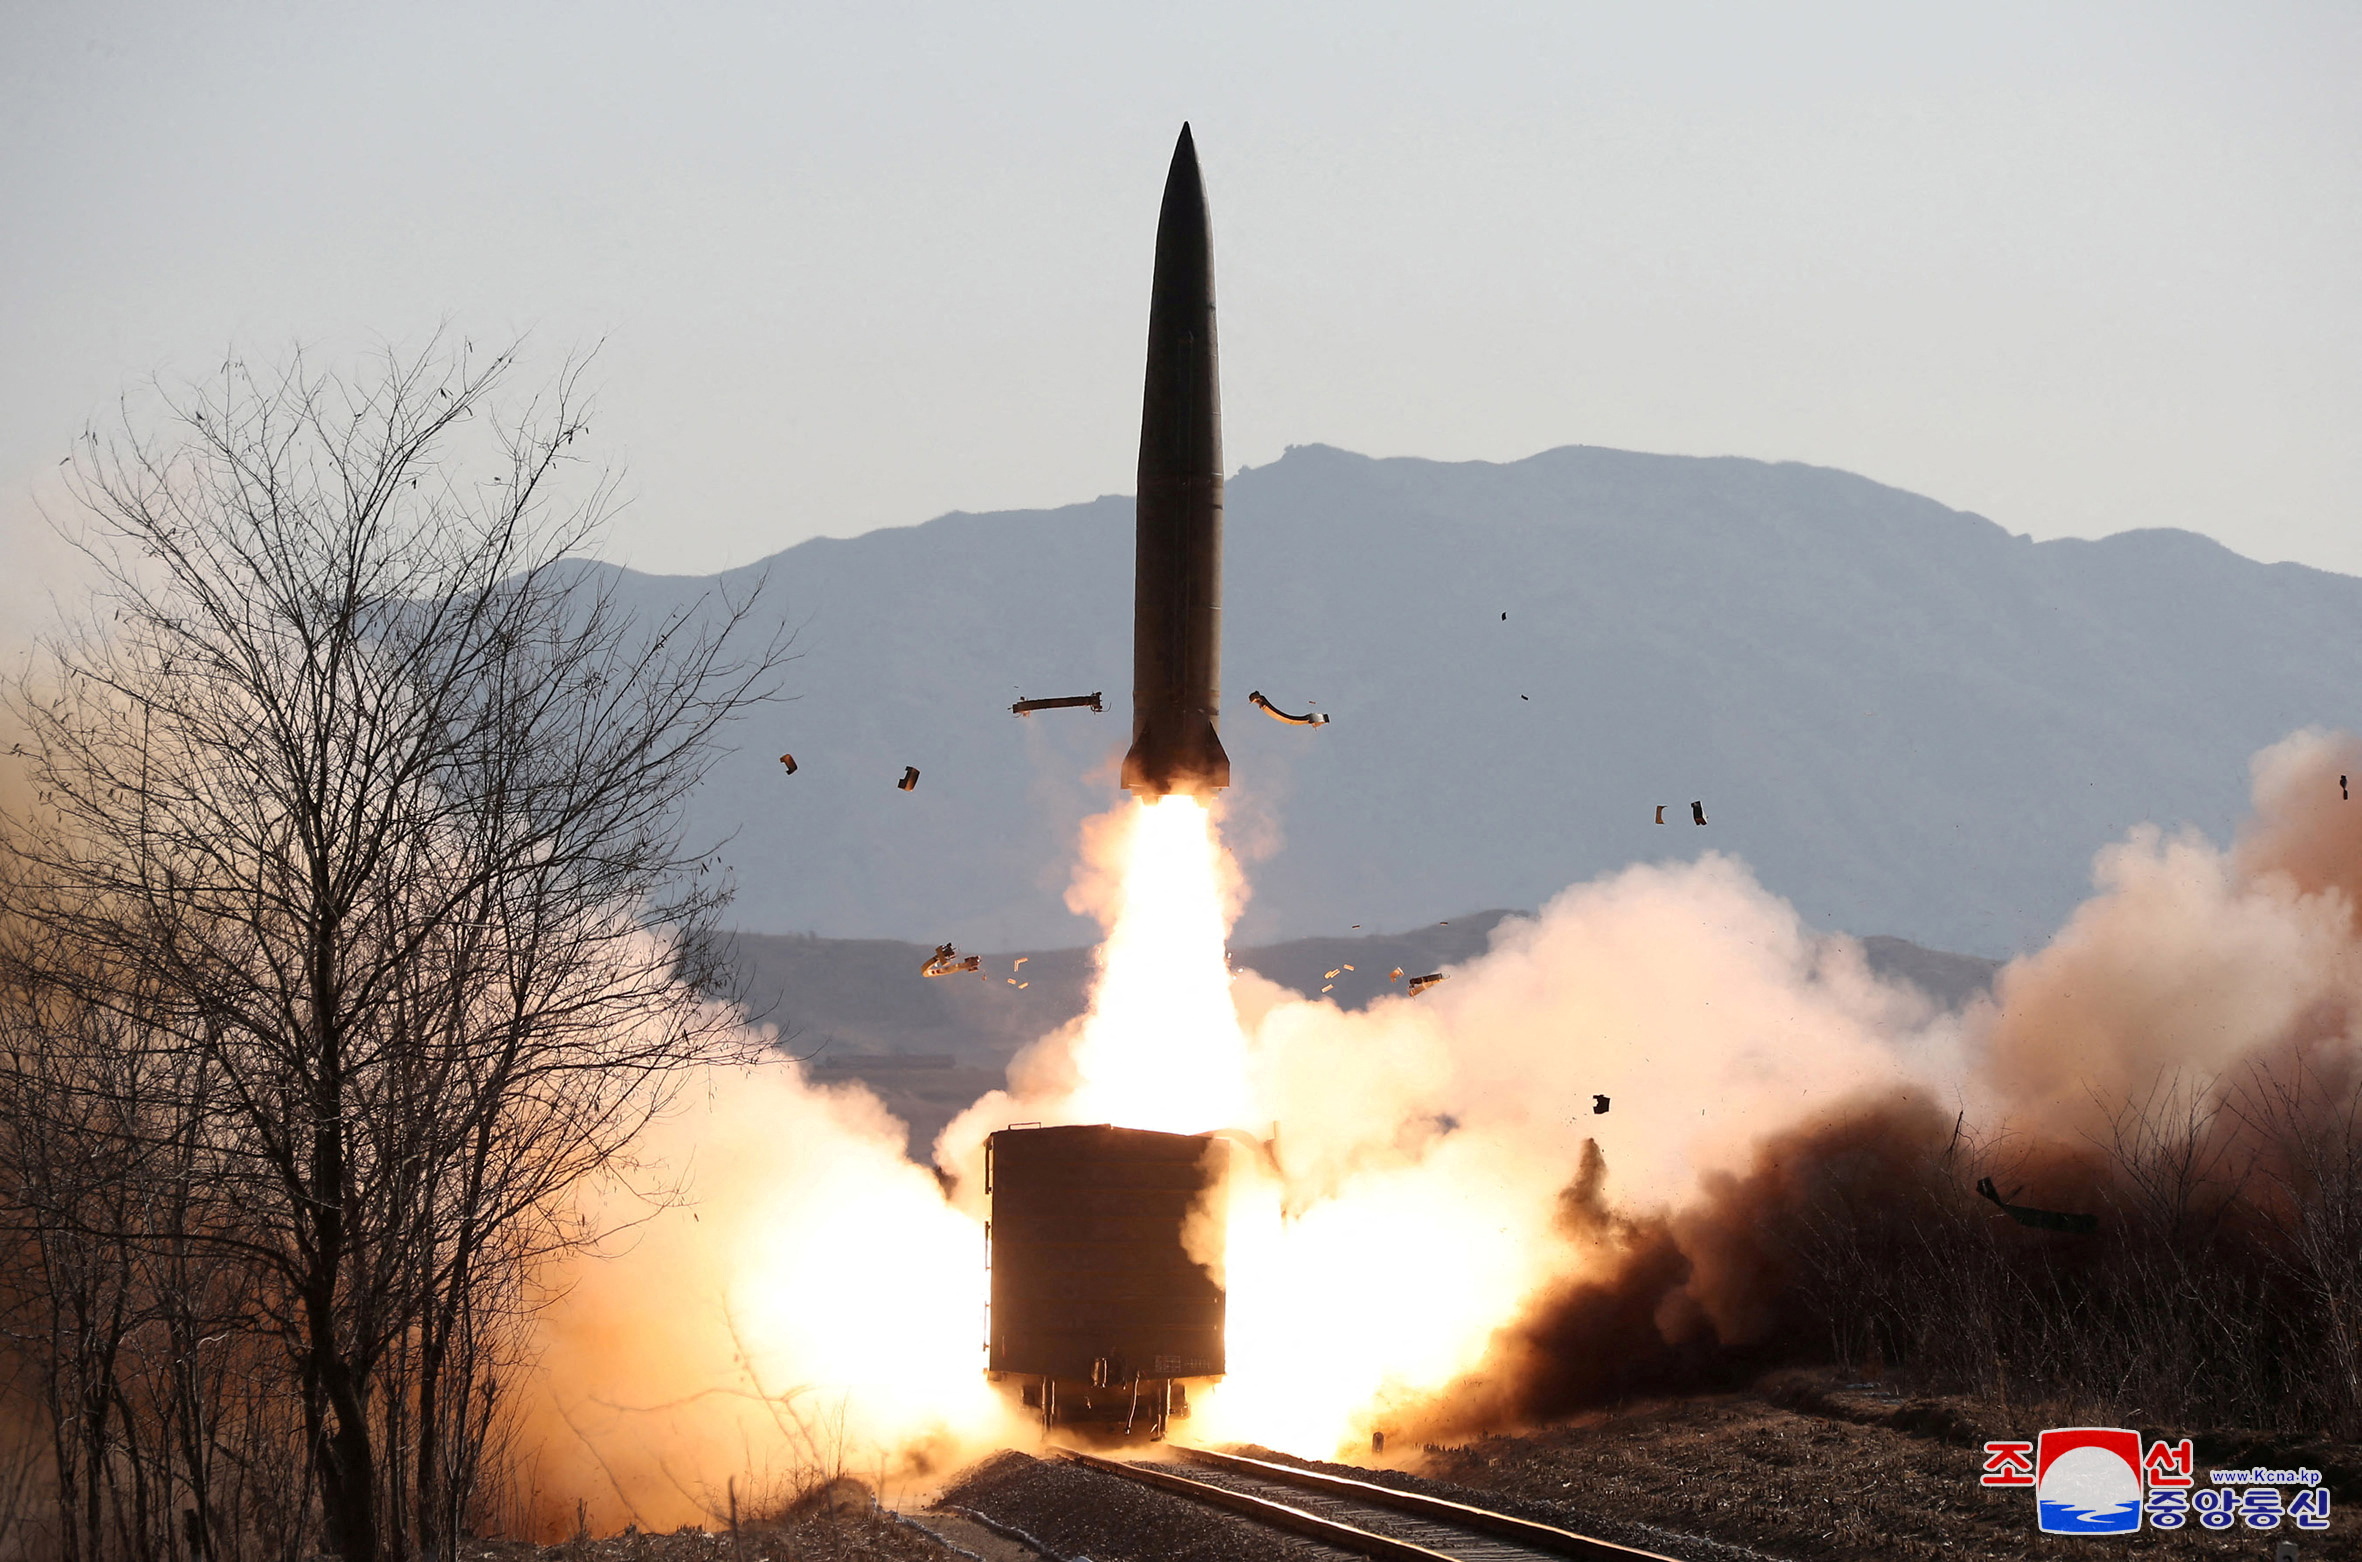 Βόρεια Κορέα: Το πάτησε και πάλι ο Κιμ Γιονγκ Ουν – Νέα εκτόξευση πυραύλου